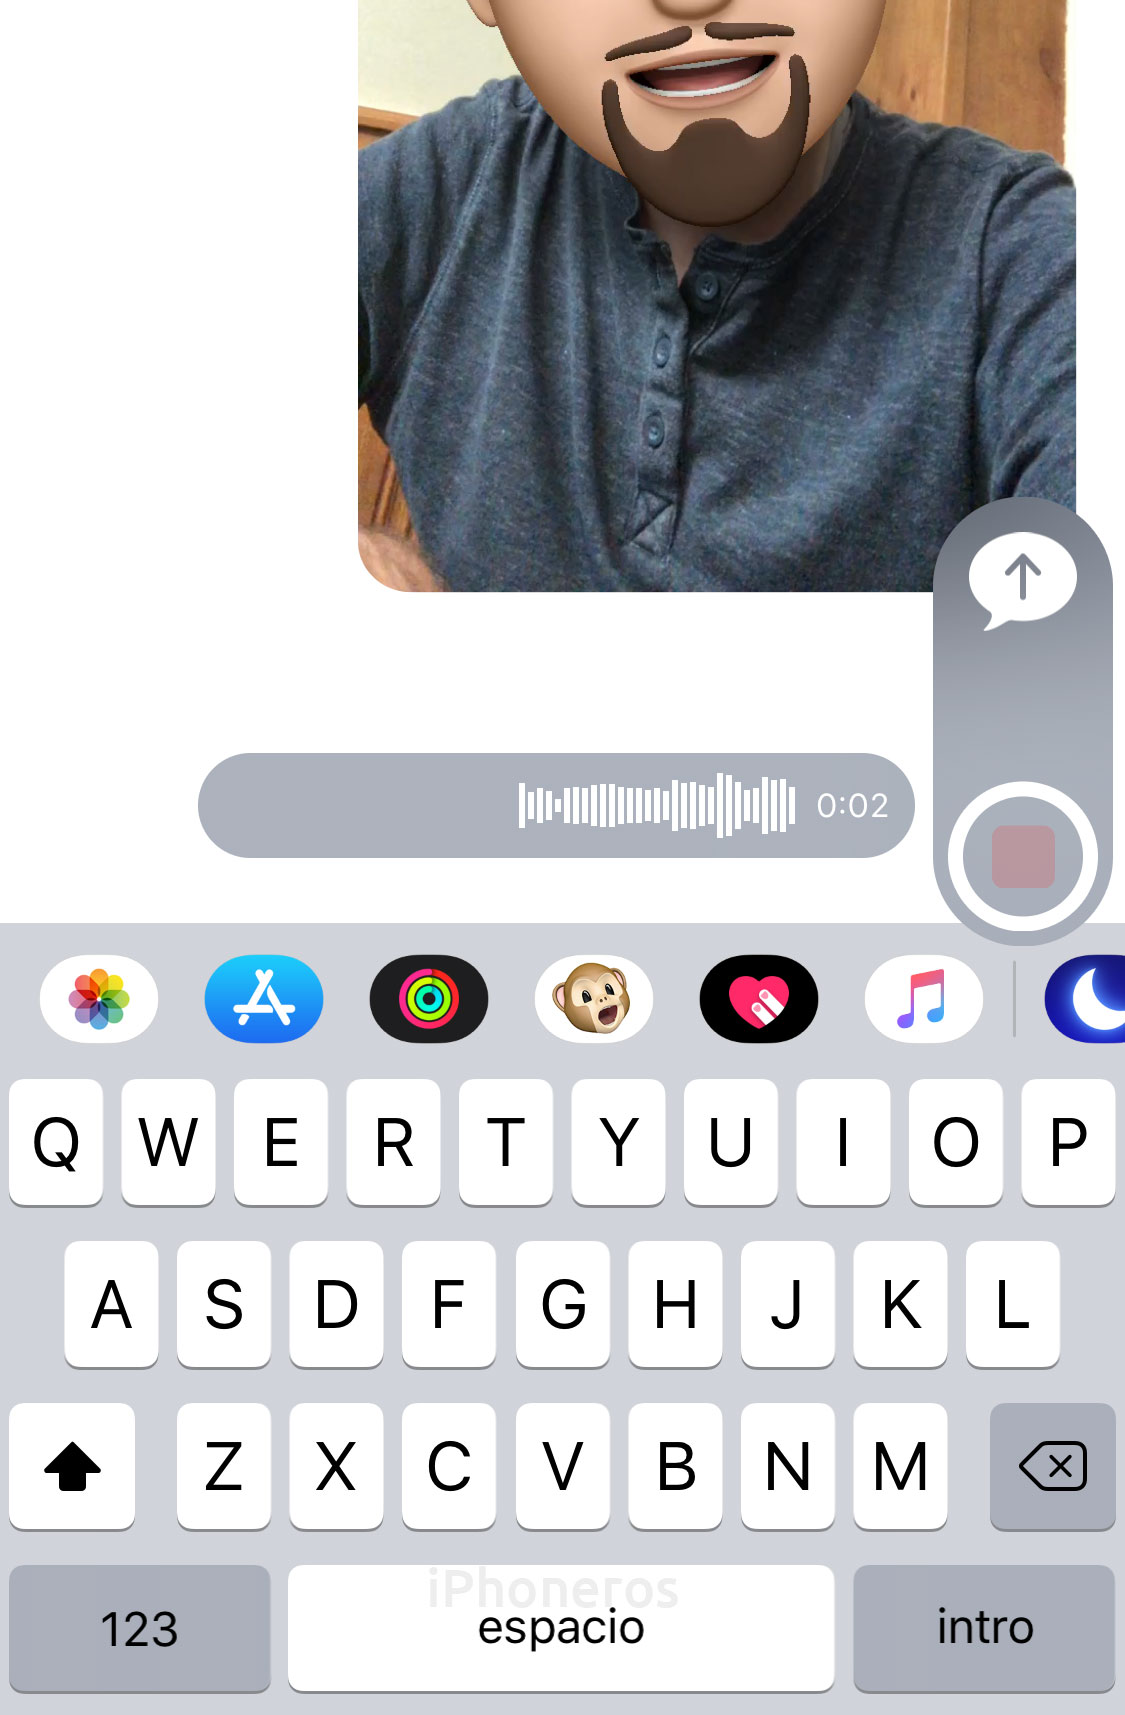 Enviando un mensaje de audio en la App de Mensajes